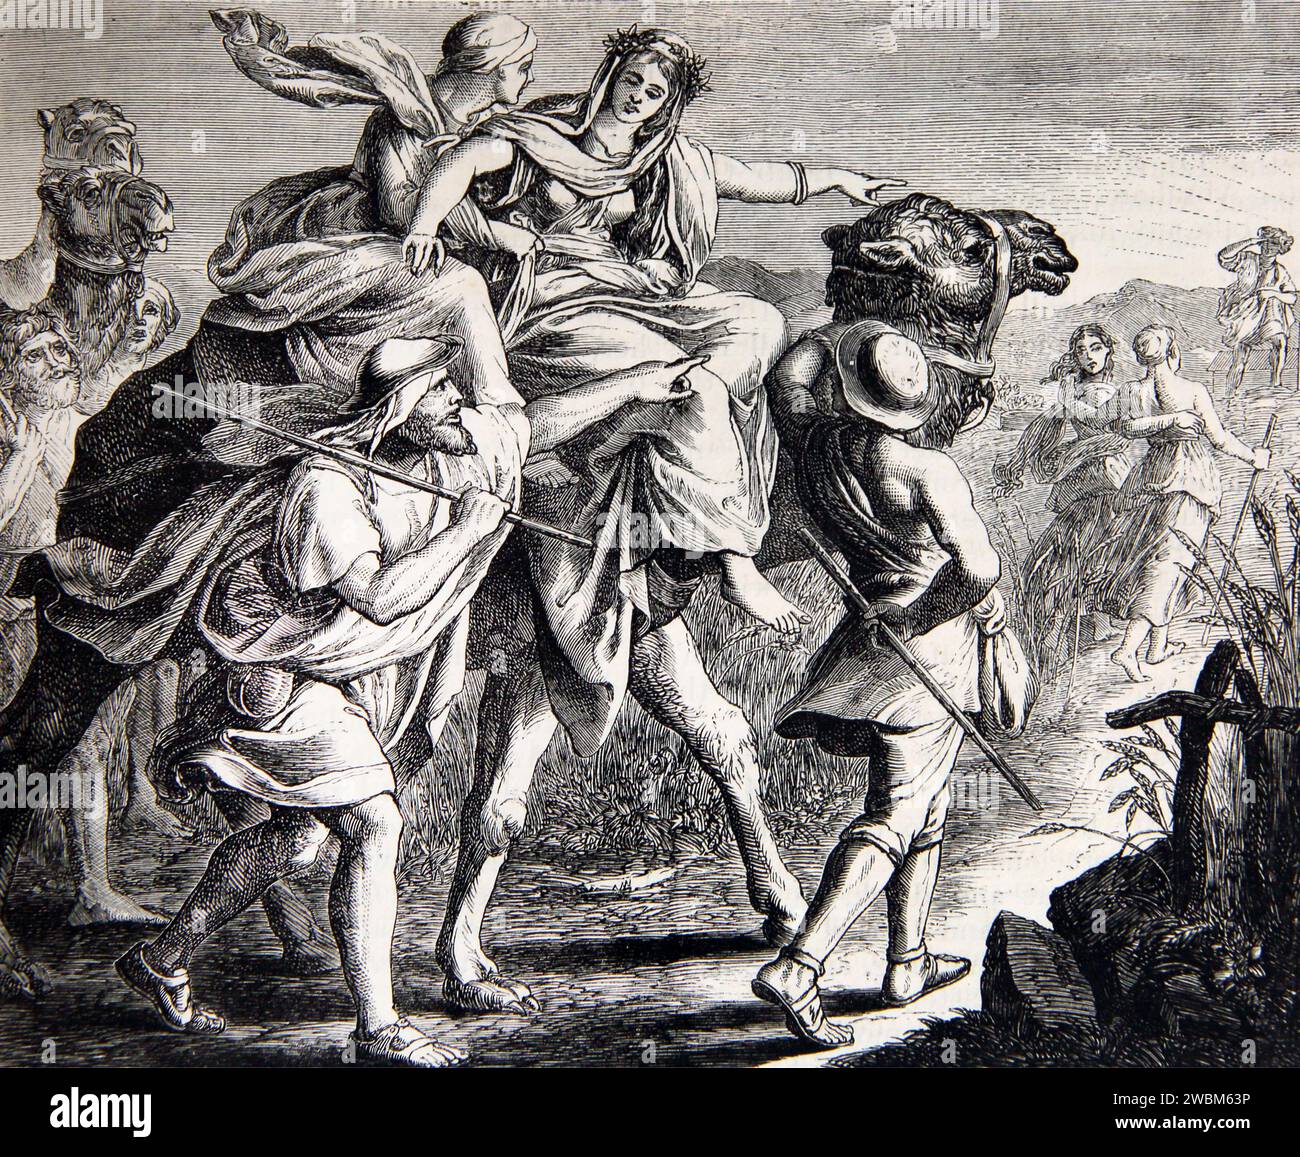 Illustration der Begegnung von Isaak und Rebekah - Isaak betet auf einem Feld, als Rebekah auf Einem Kamel Genesis ankam Stockfoto